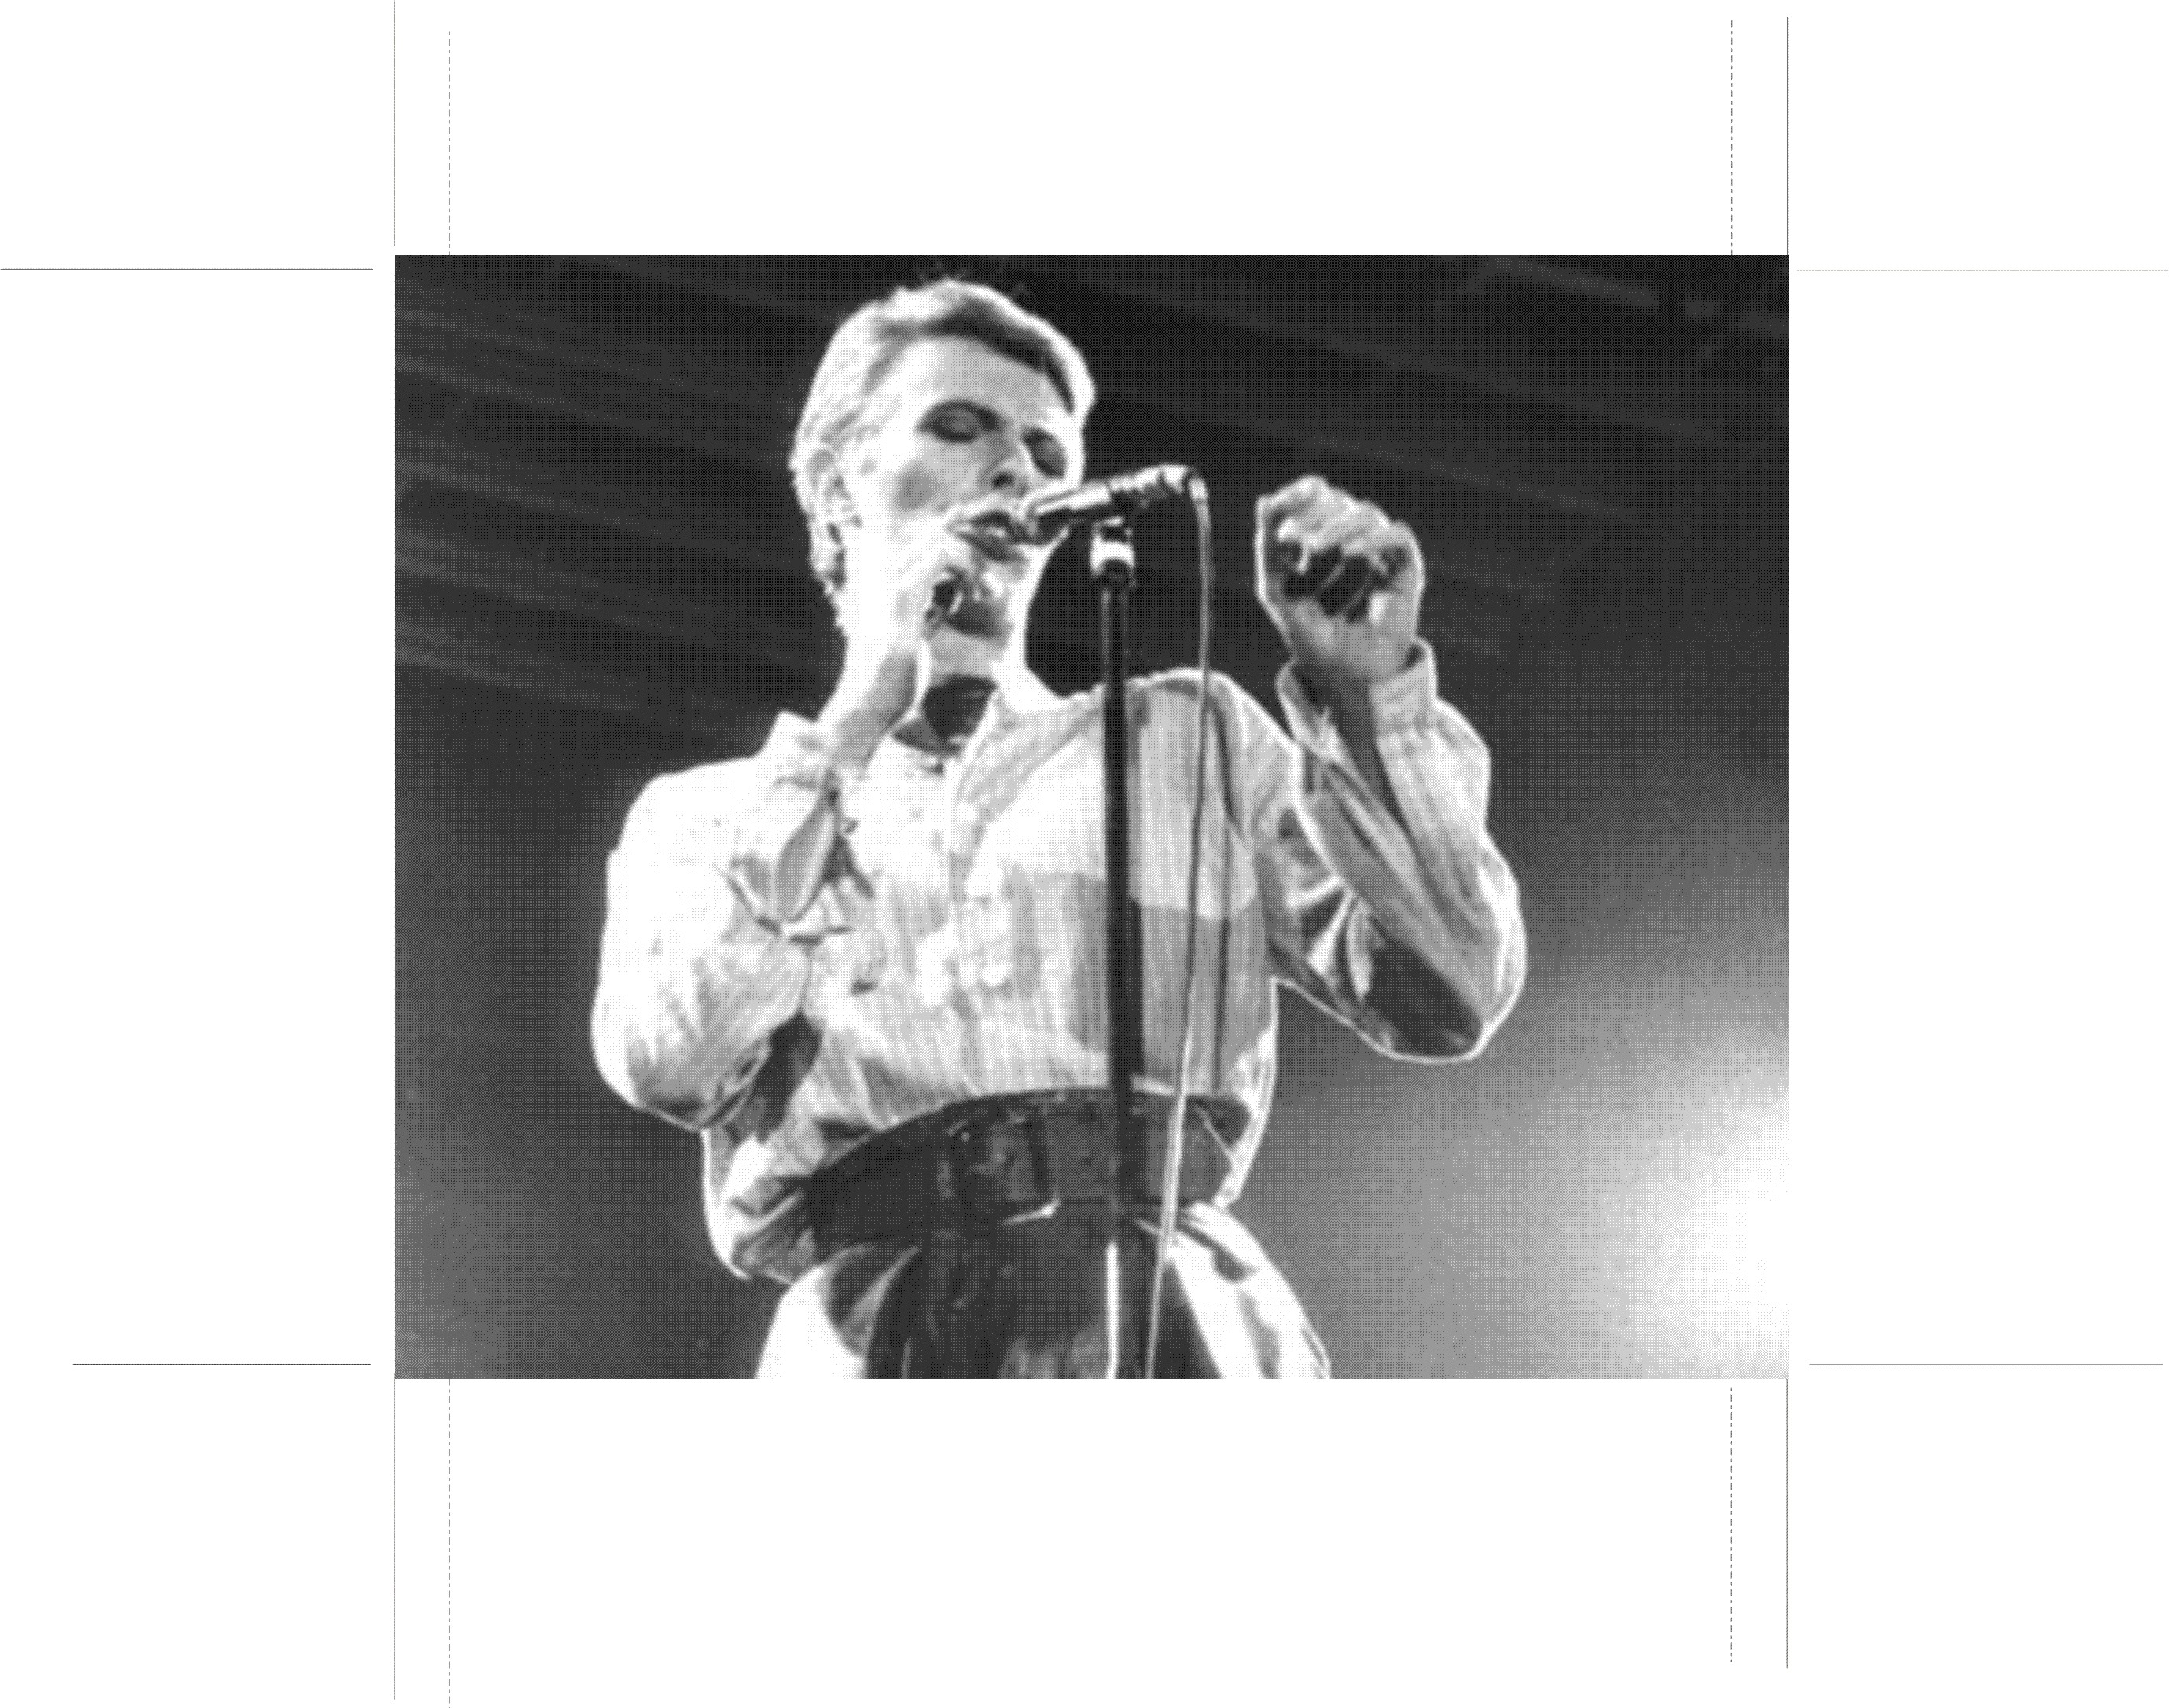 david bowie 1978 tour dates